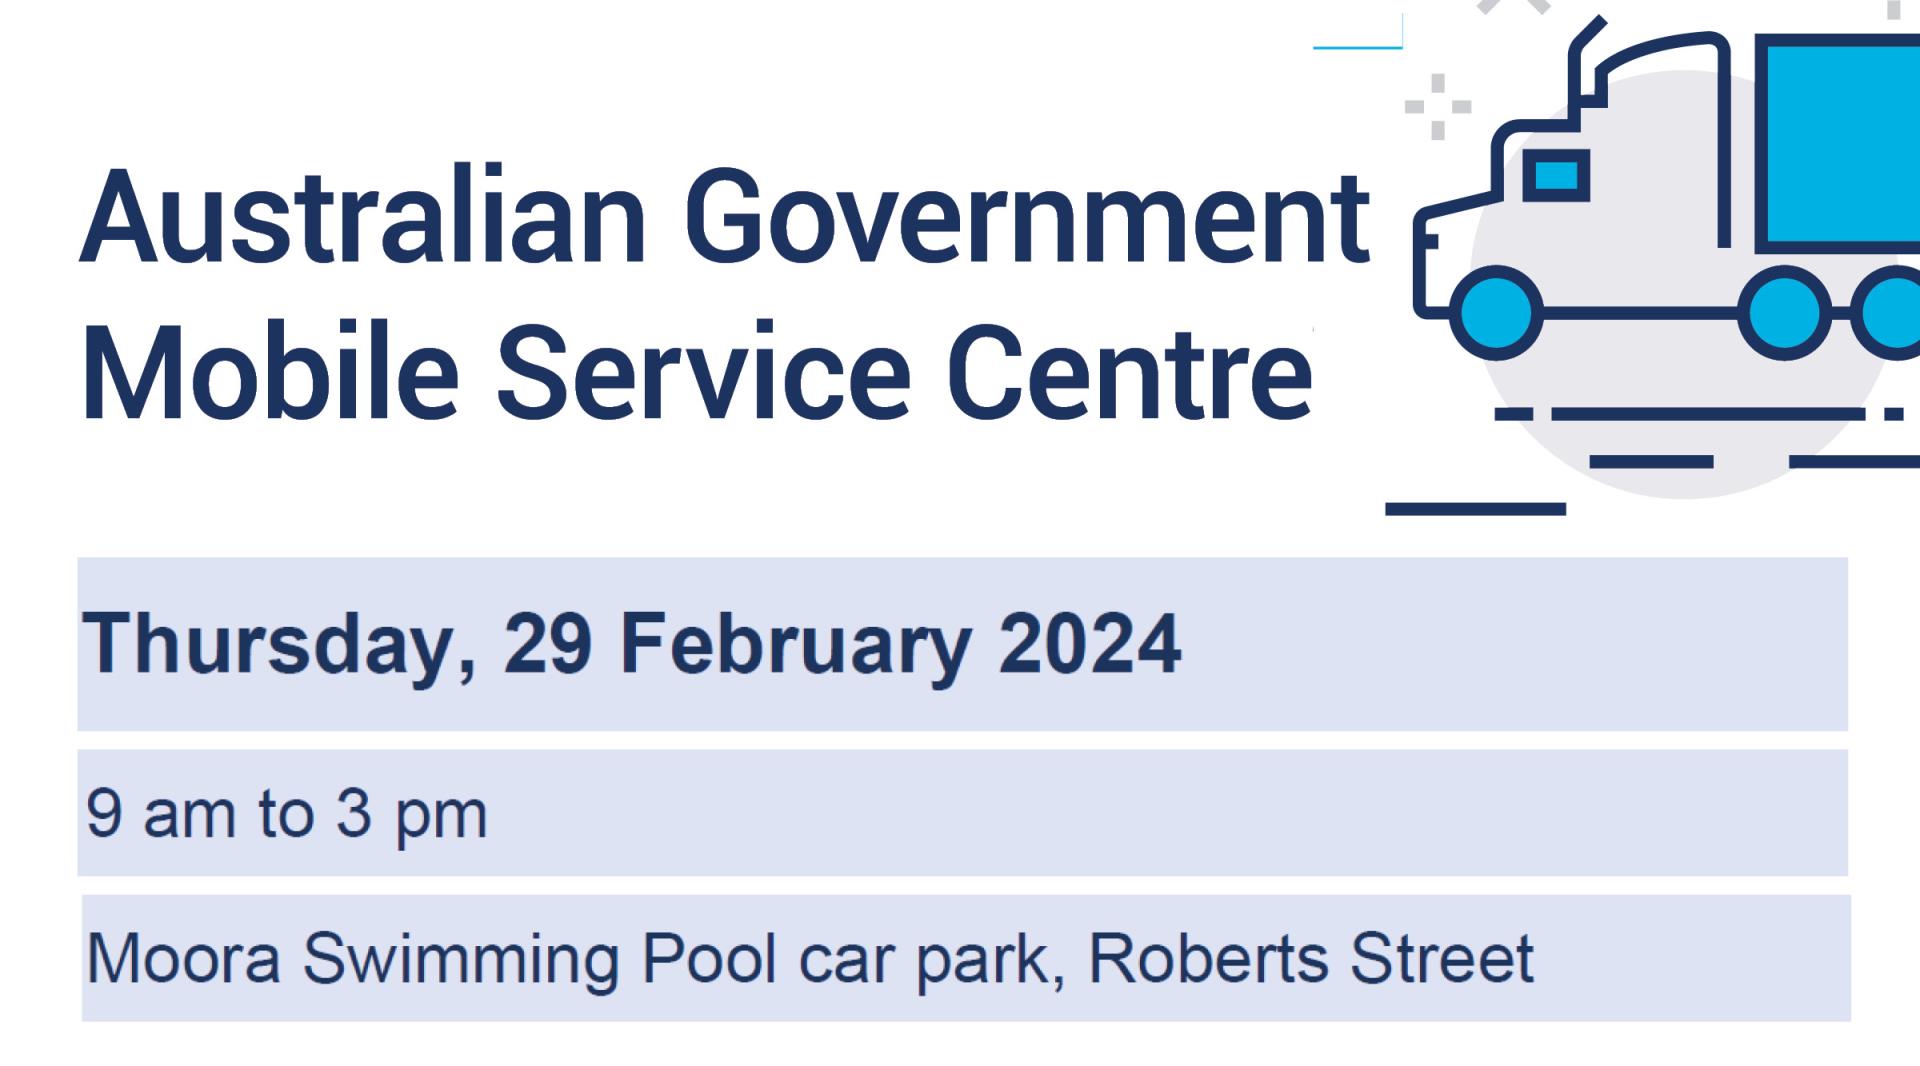 Australian Government Mobile Service Centre, in Moora 29 Feb